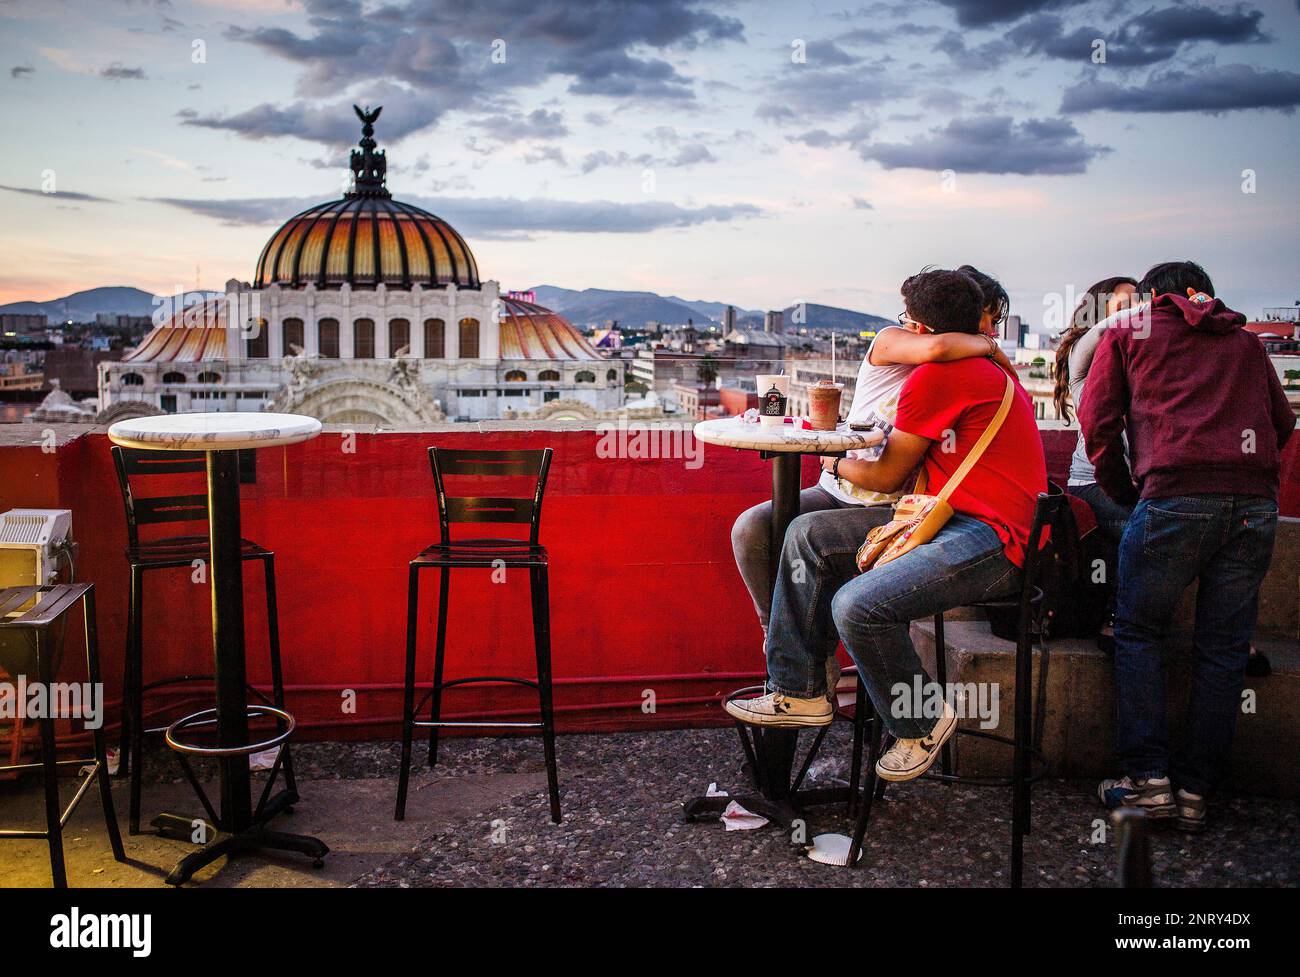 Cafe de la ciudad de mexico fotografías e imágenes de alta resolución -  Página 13 - Alamy